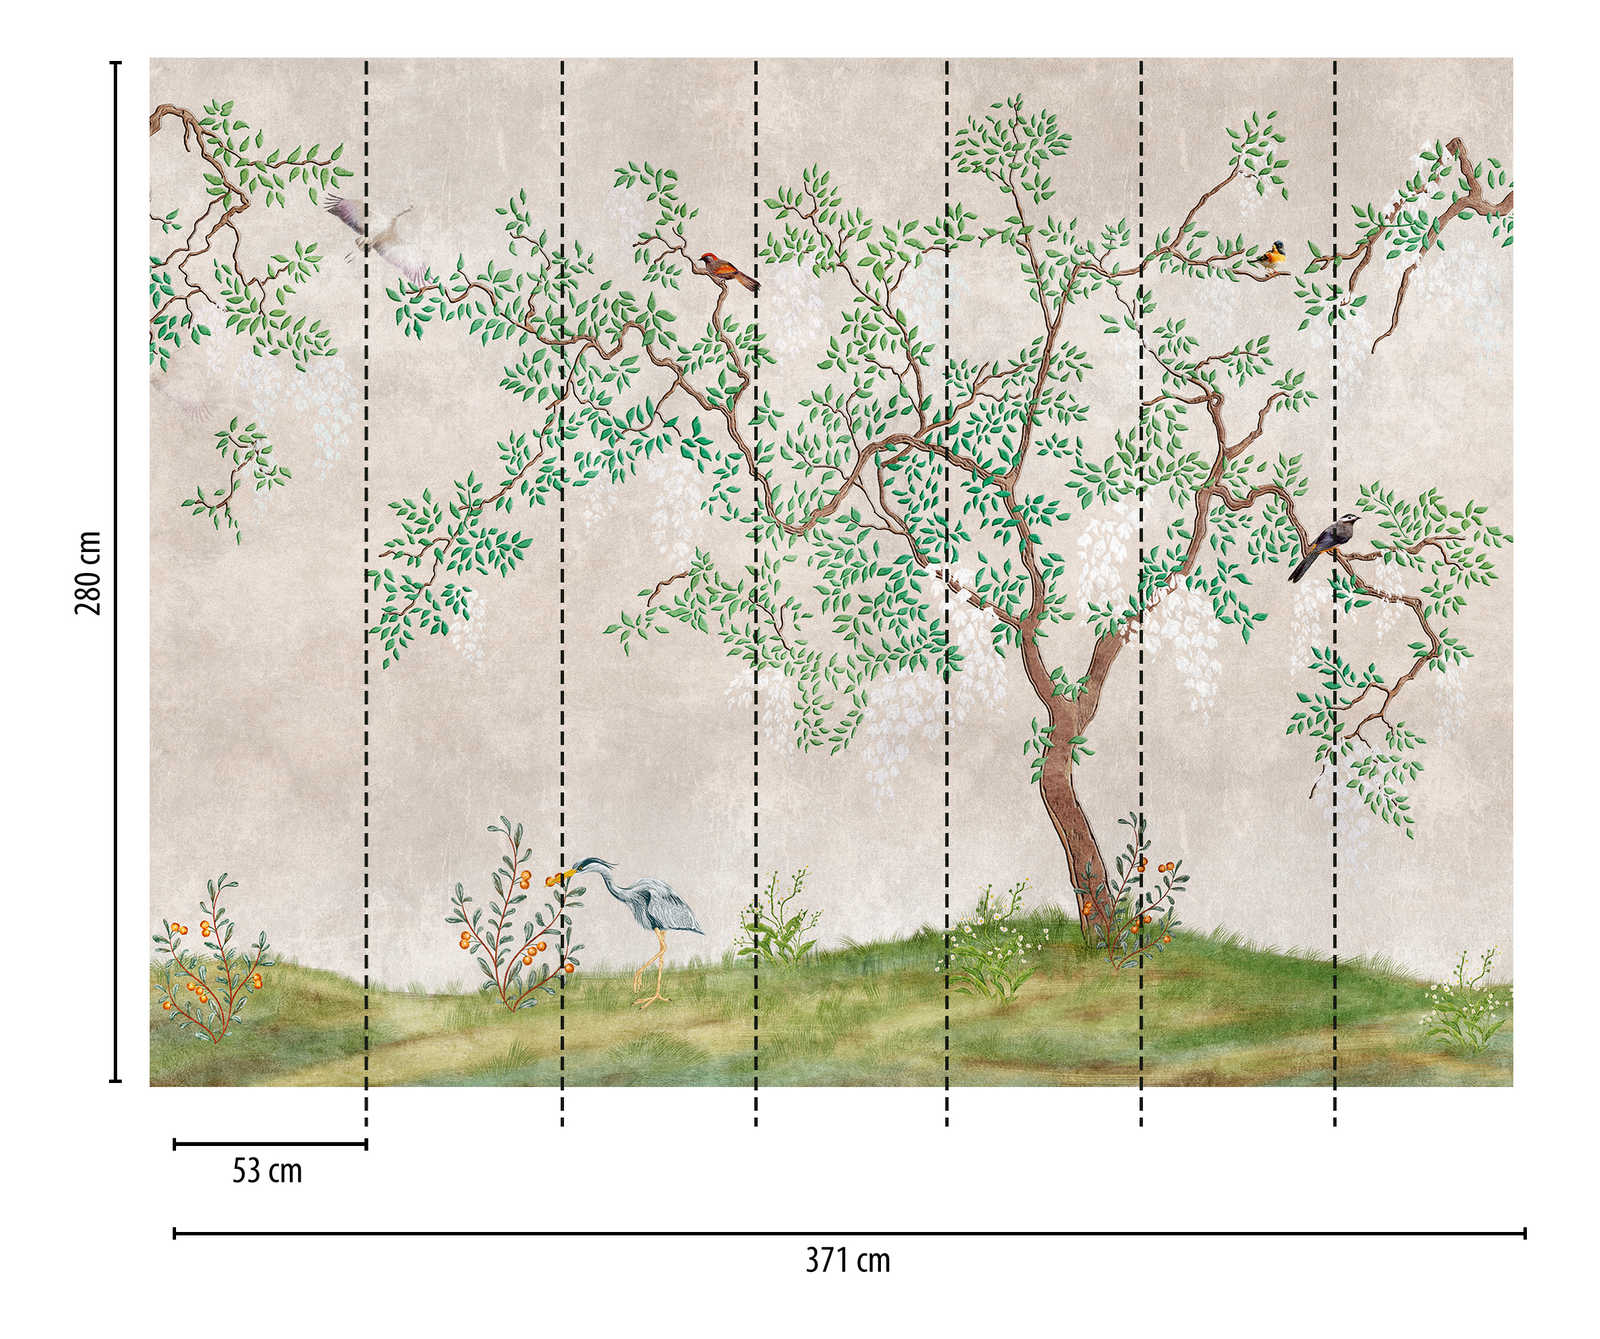             Nouveauté en matière de papier peint | papier peint à motifs Nature Design en look asiatique
        